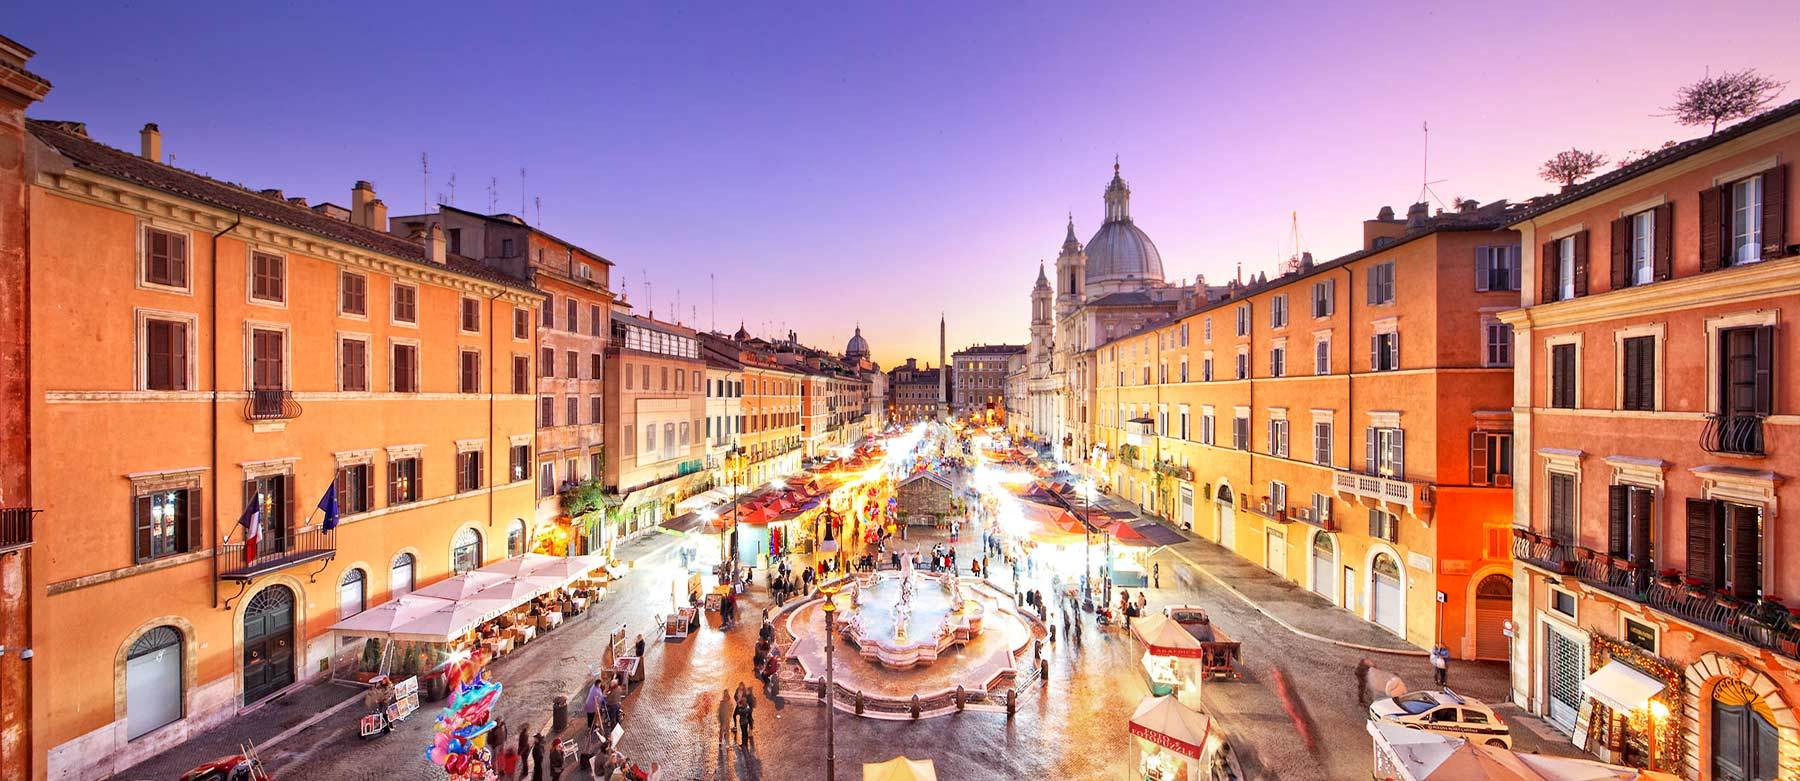 €553 - Отдых в Риме на Рождество 2016